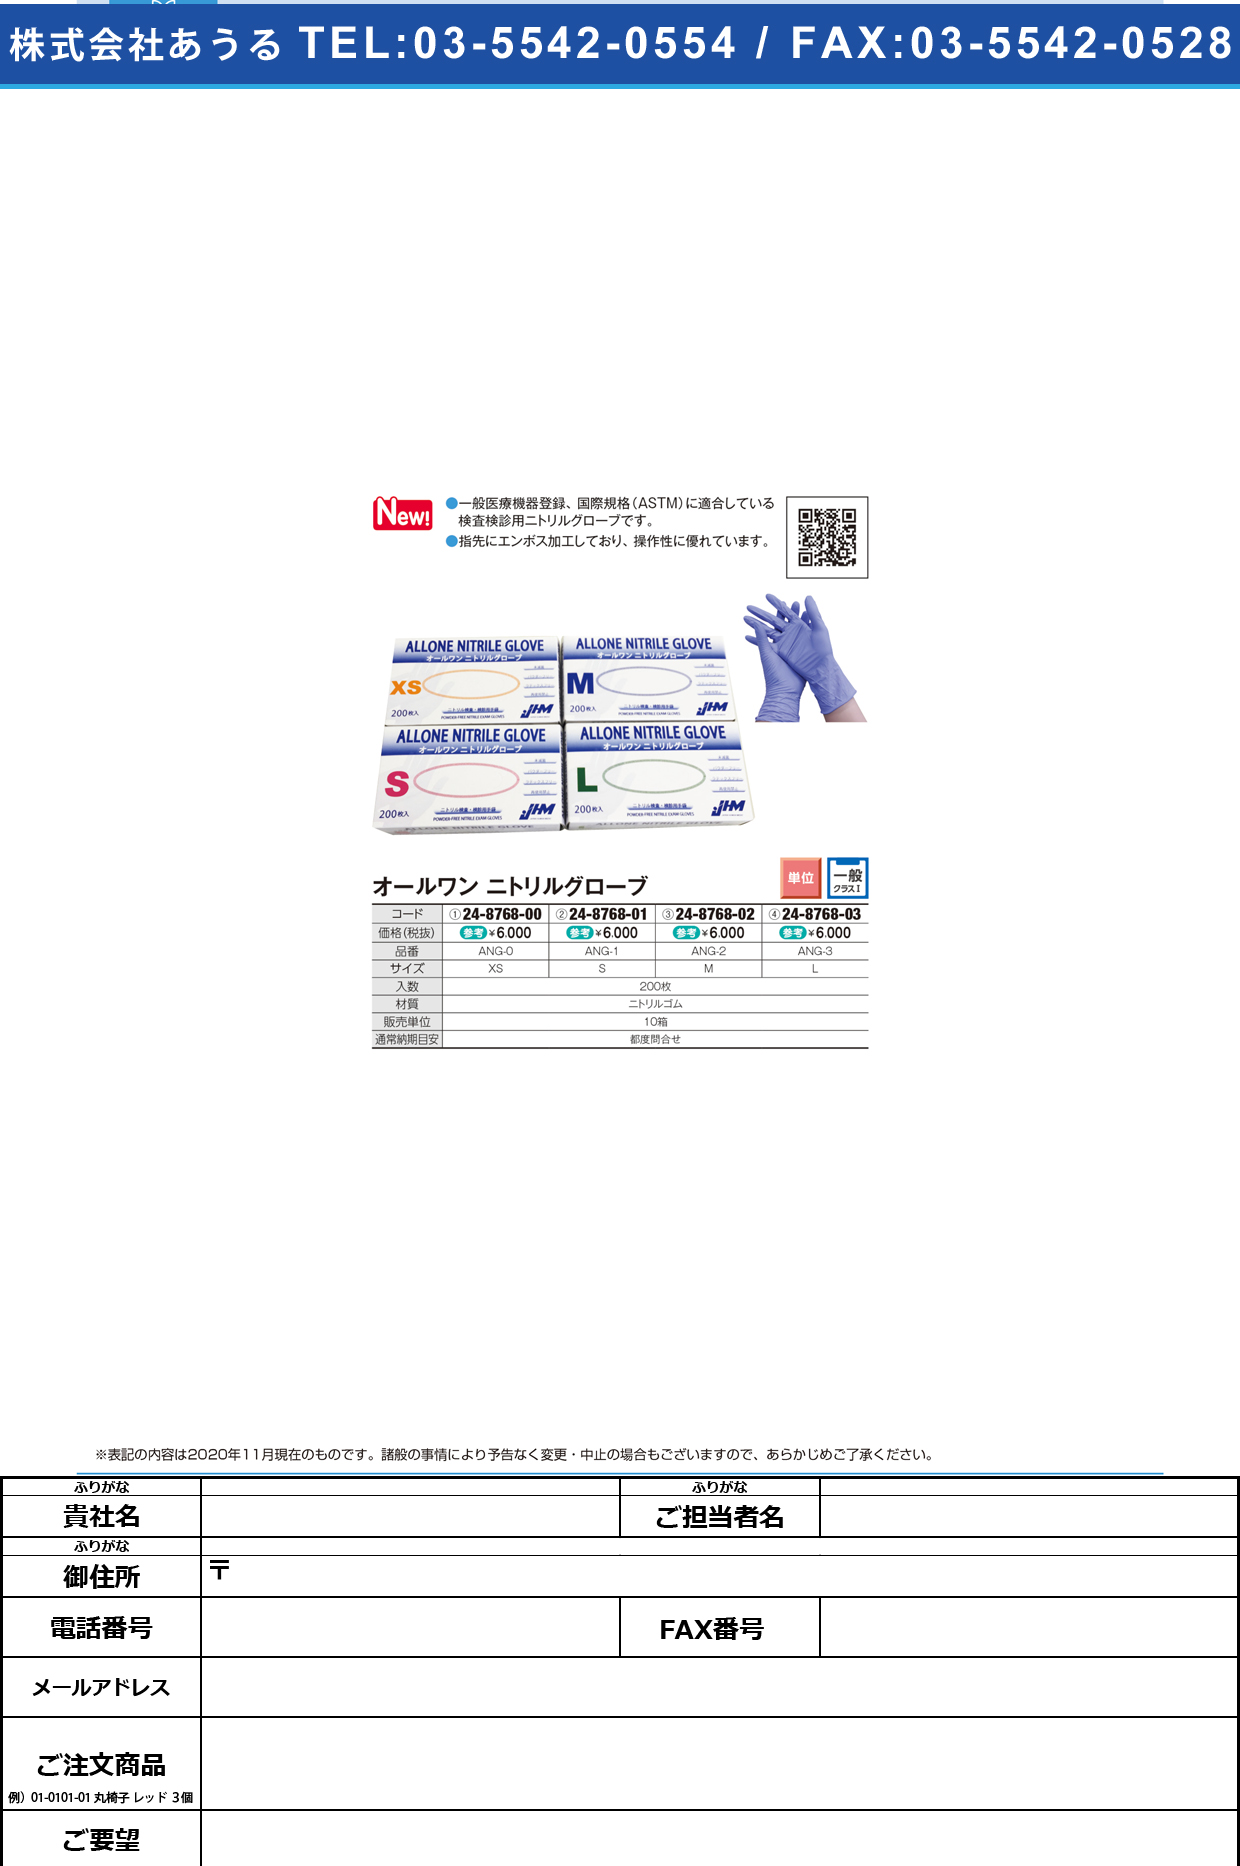 オールワンニトリルグローブ ANG-3(Lサイズ)200マイANG-3(Lｻｲｽﾞ)200ﾏｲ(24-8768-03)【日本ヒューマンメディク】(販売単位:10)